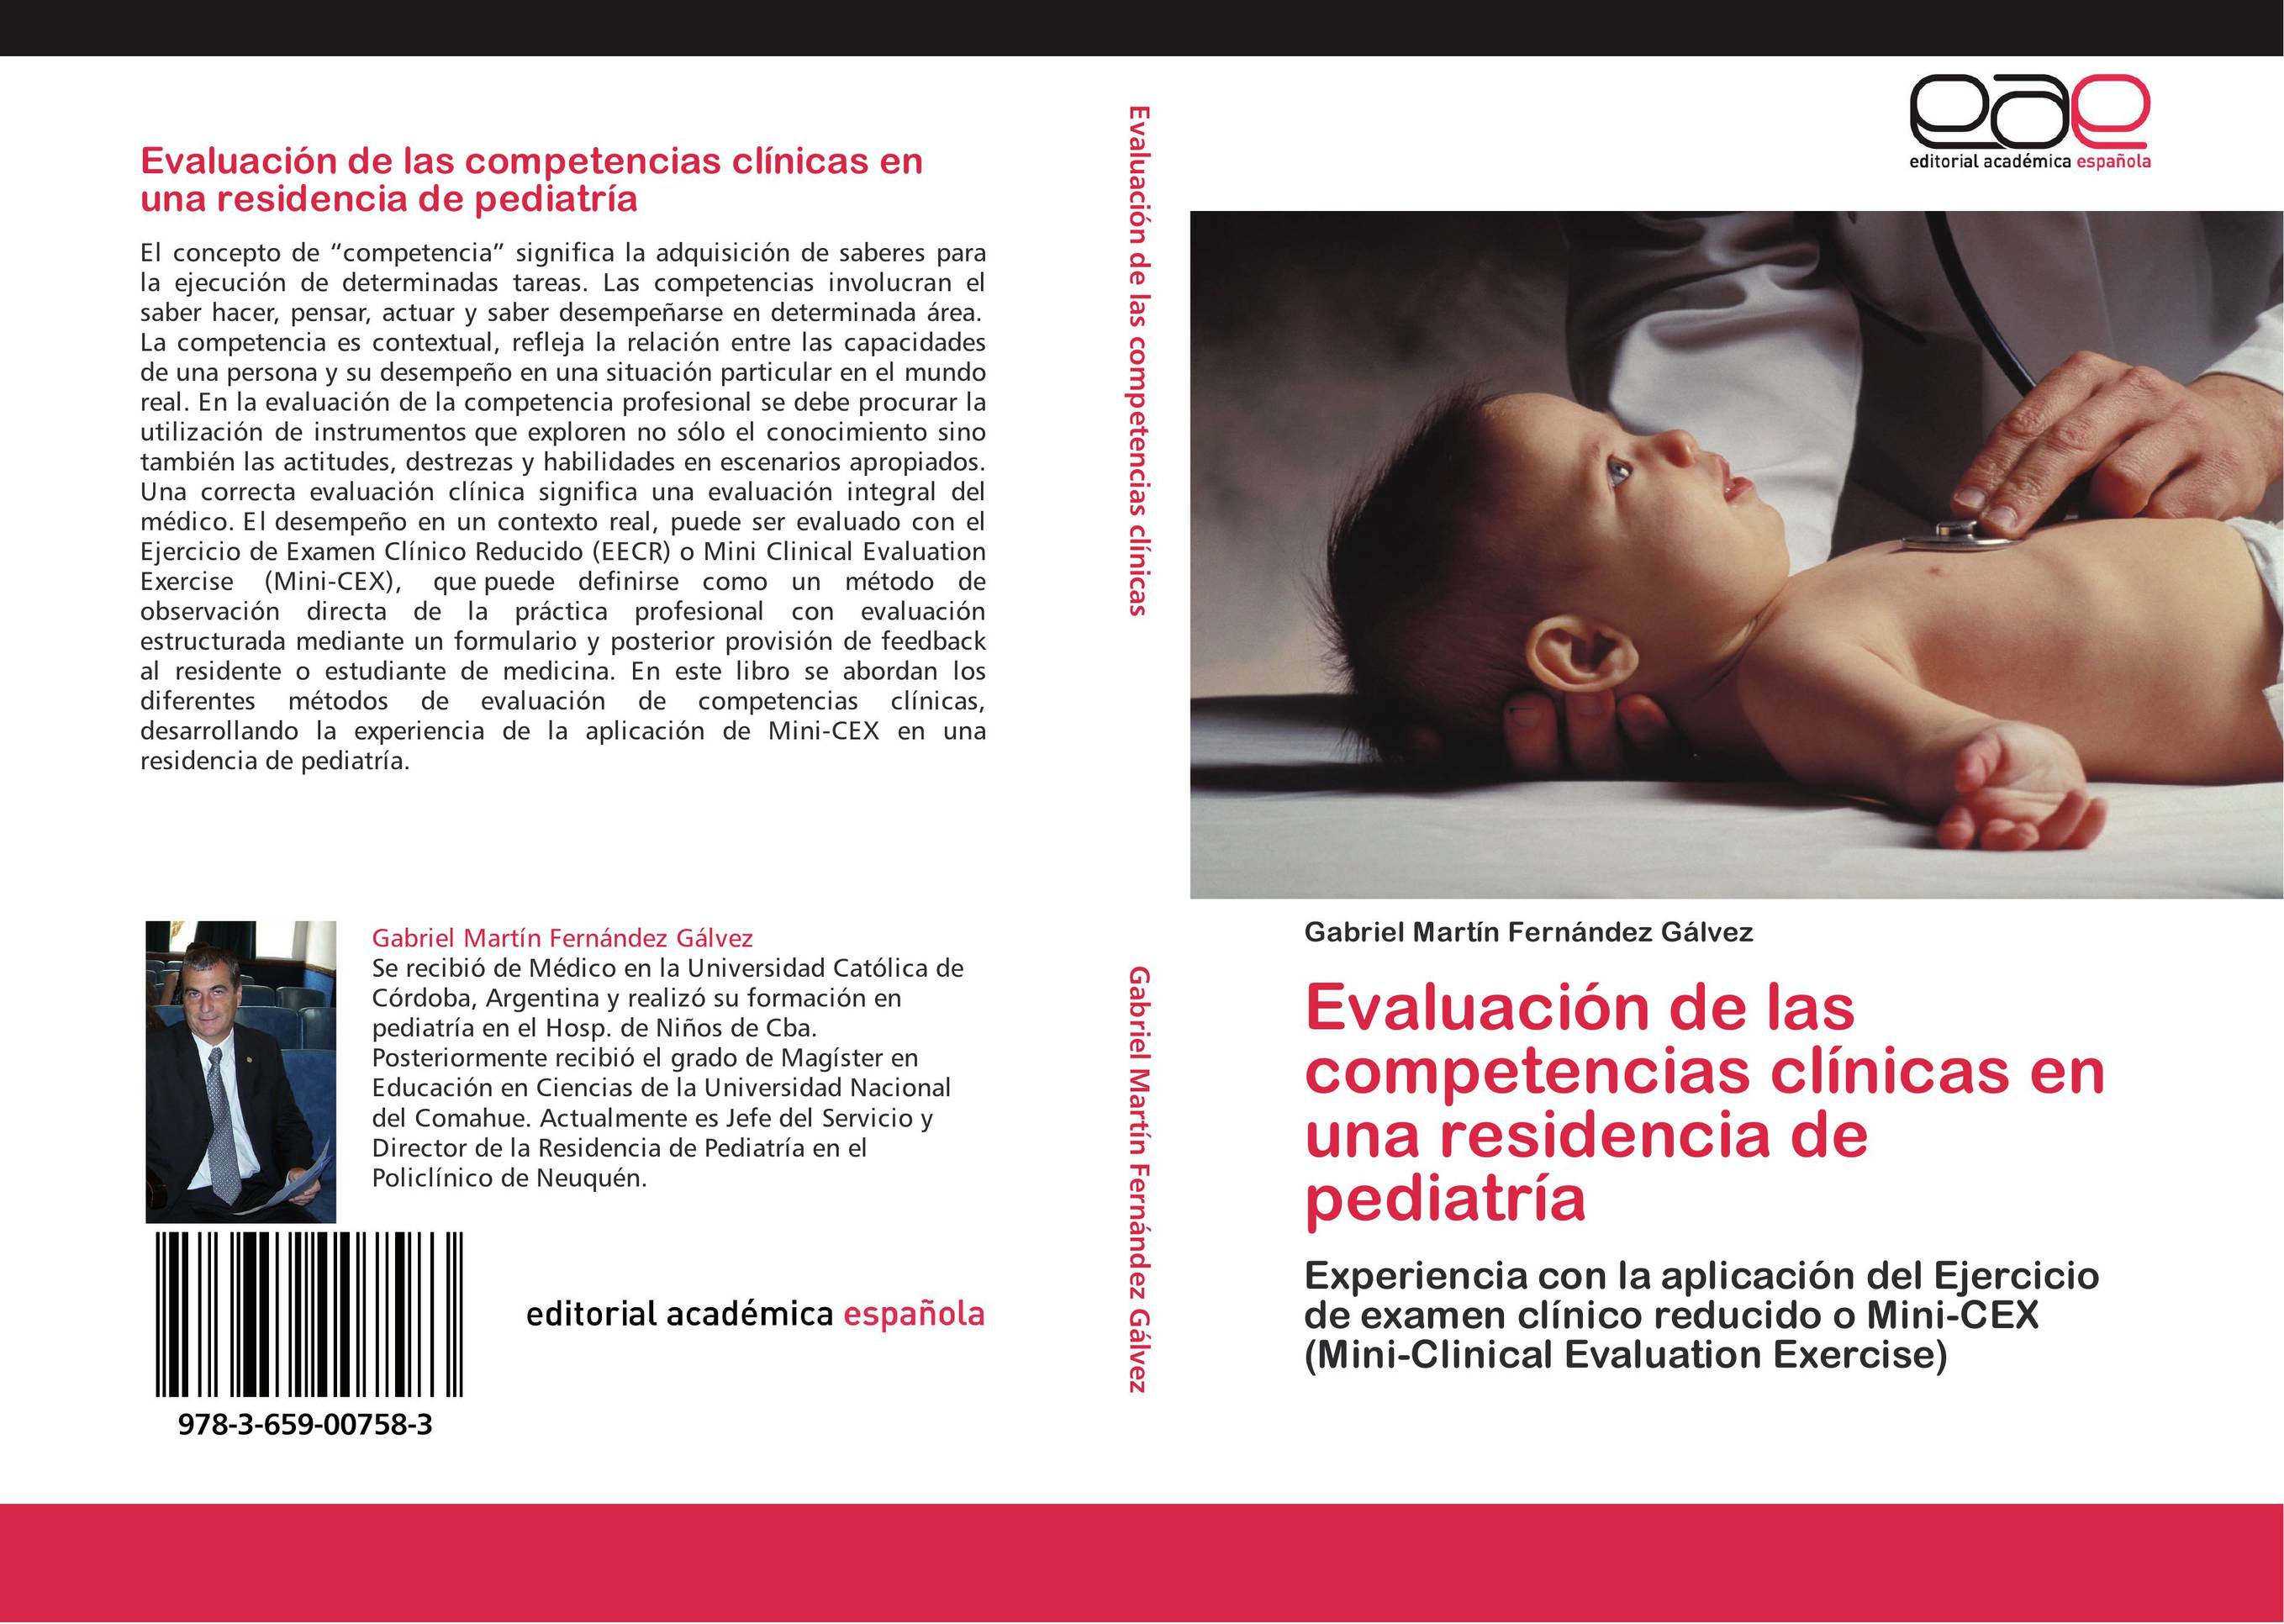 Evaluación de las competencias clínicas en una residencia de pediatría